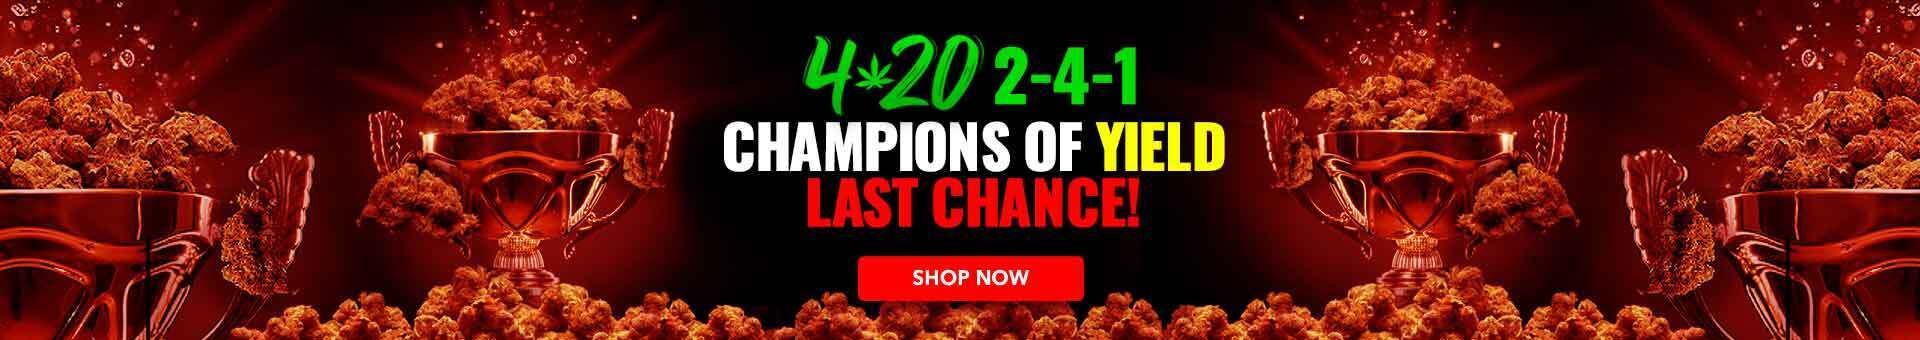 MSNL 420 sale last chance